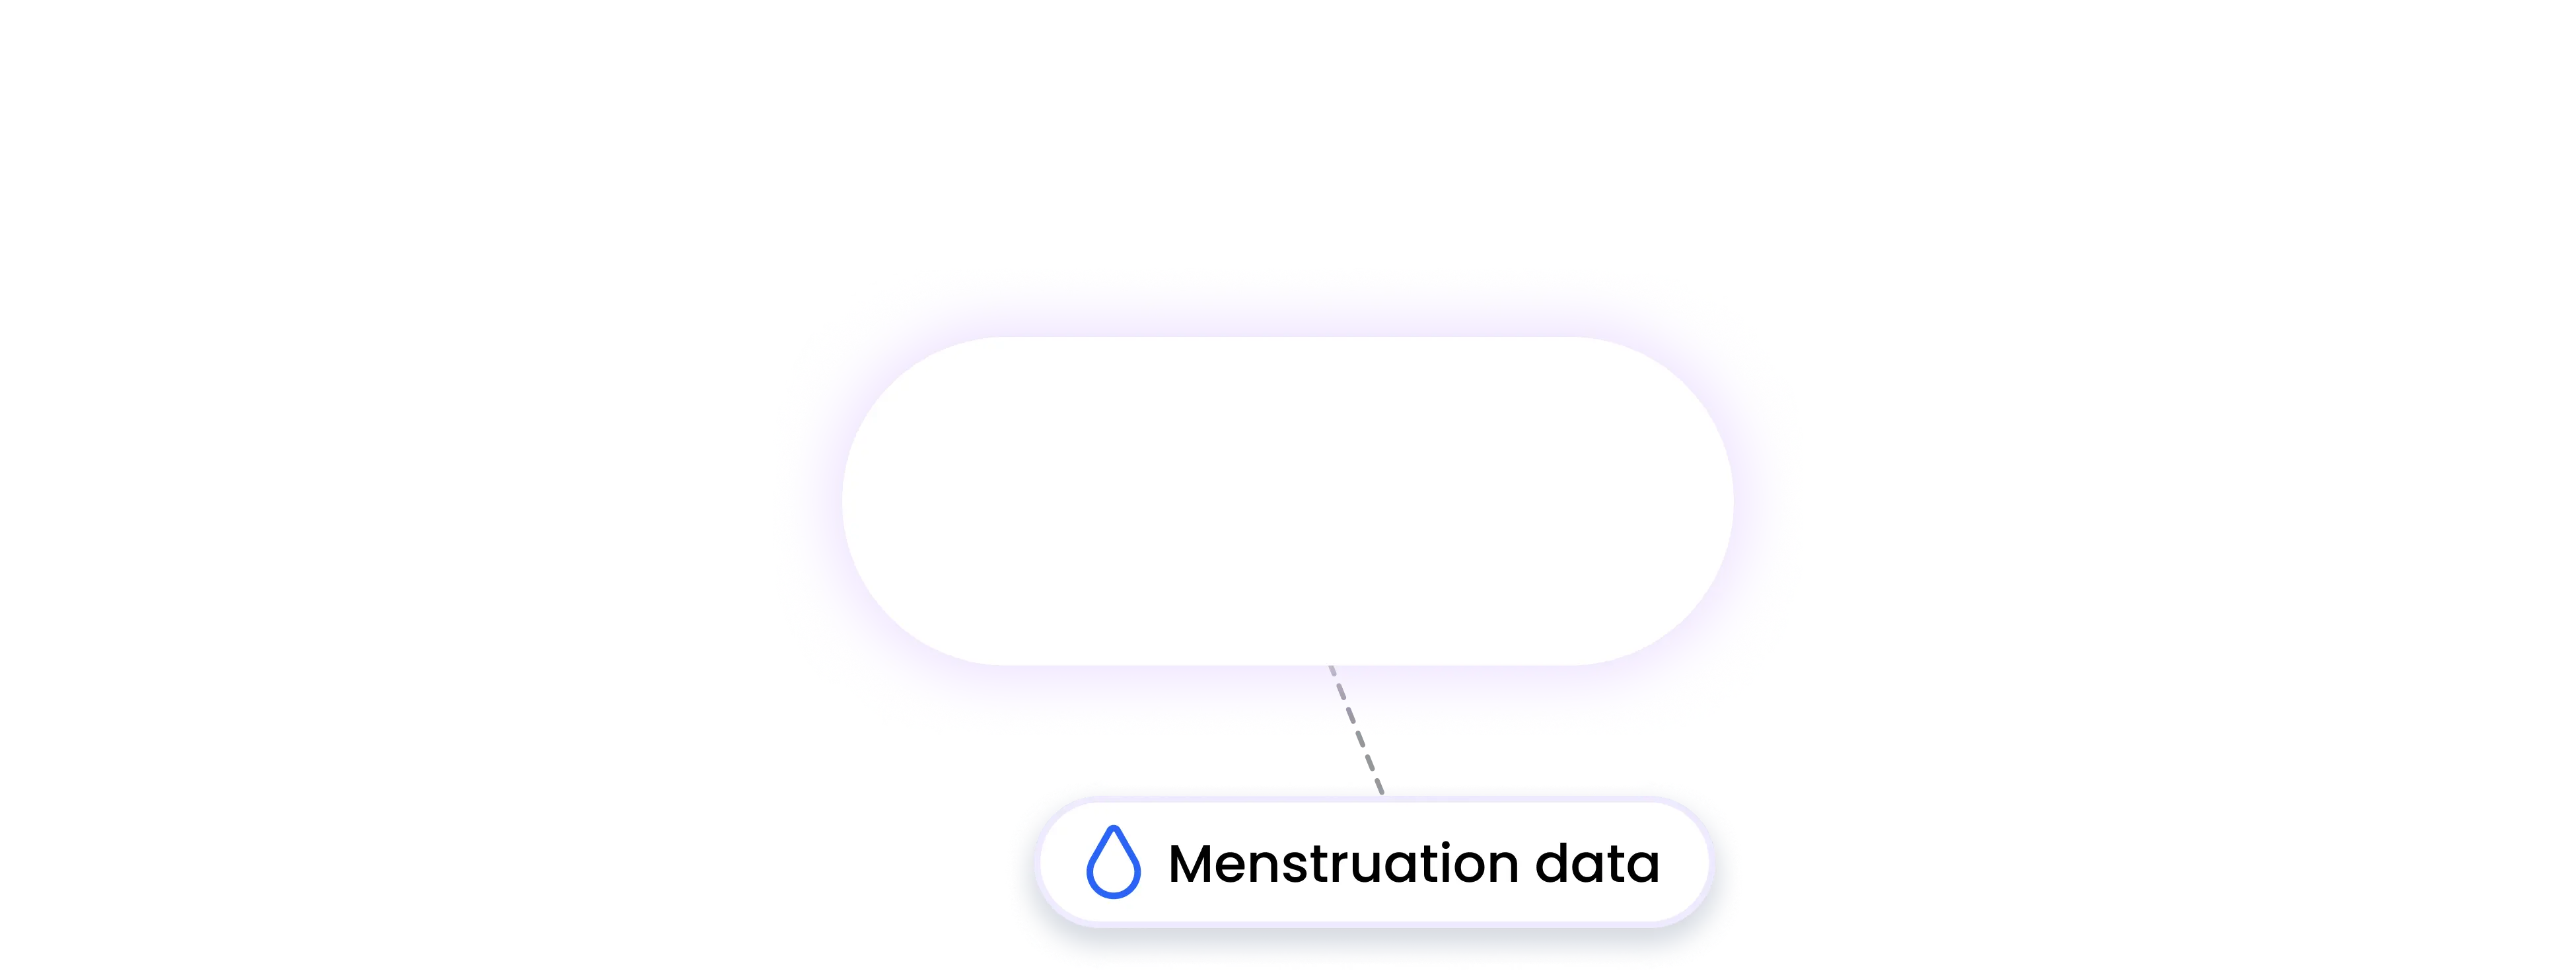 ifit integration MENSTRUATION data